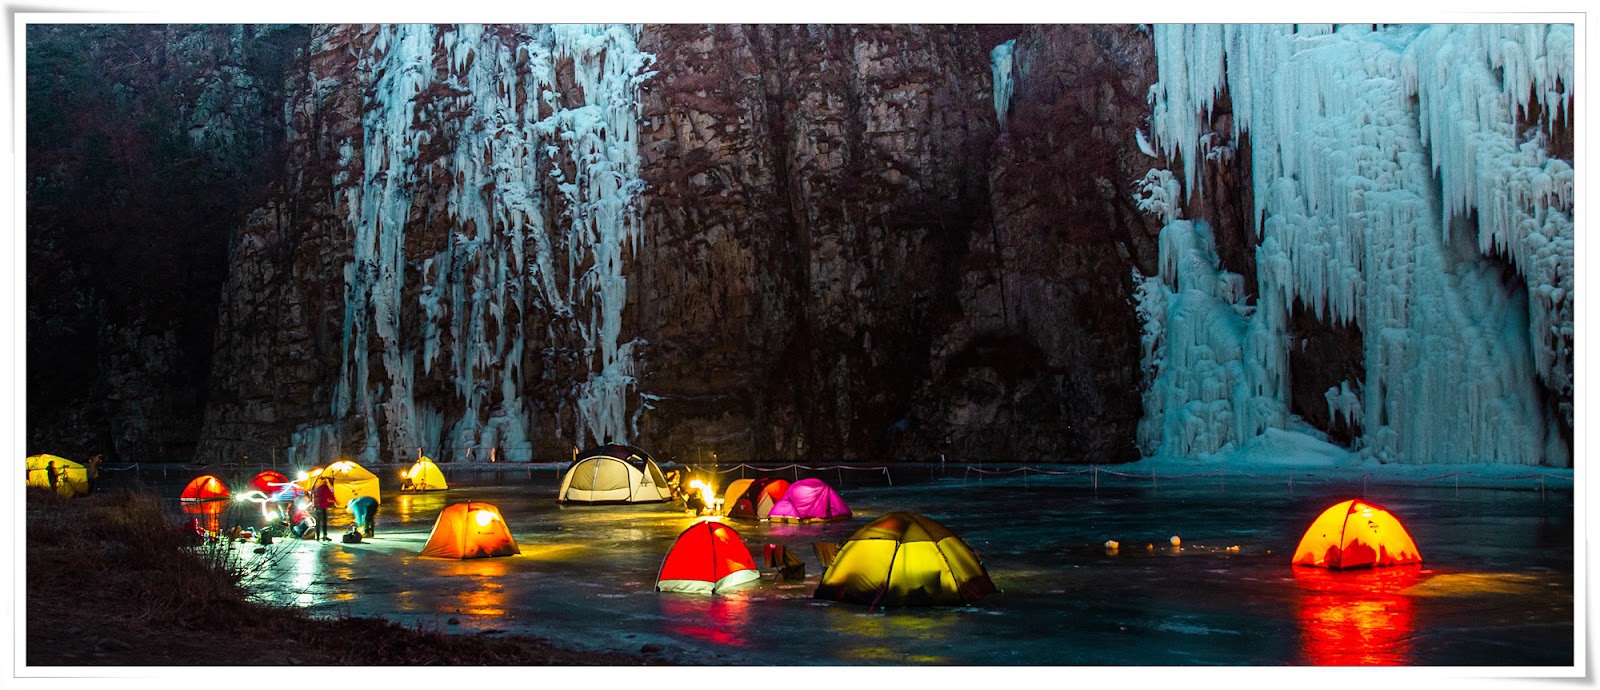 Chàng trai Việt vượt 300 km đi cắm trại trên sông băng tuyệt đẹp ở Hàn Quốc - Ảnh 1.